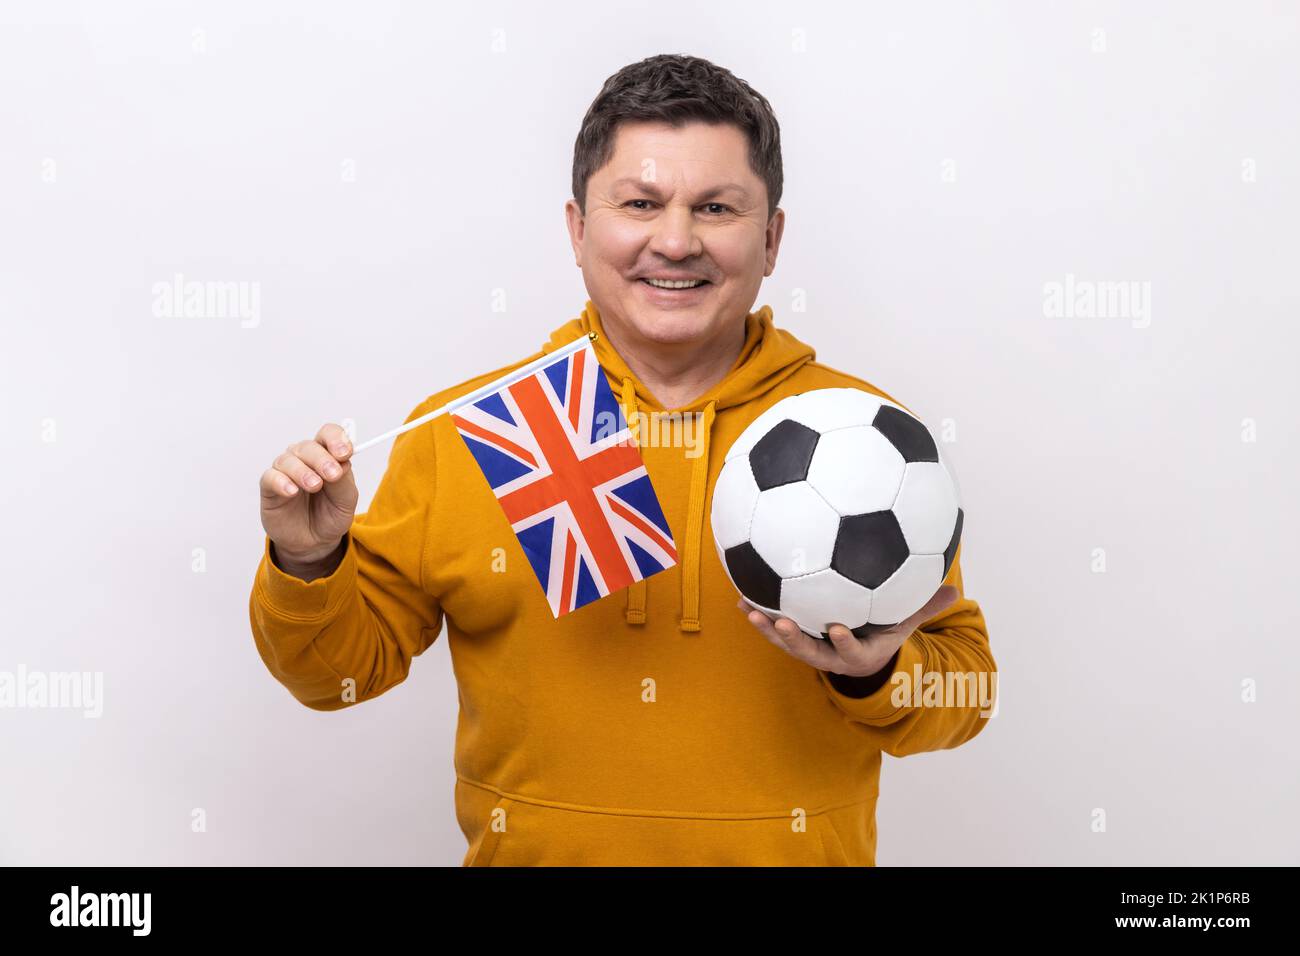 Ritratto dell'uomo soddisfatto che tiene bandiera inglese e calcio palla bianca e nera, United Football League, con felpa con cappuccio in stile urbano. Studio in interni isolato su sfondo bianco. Foto Stock